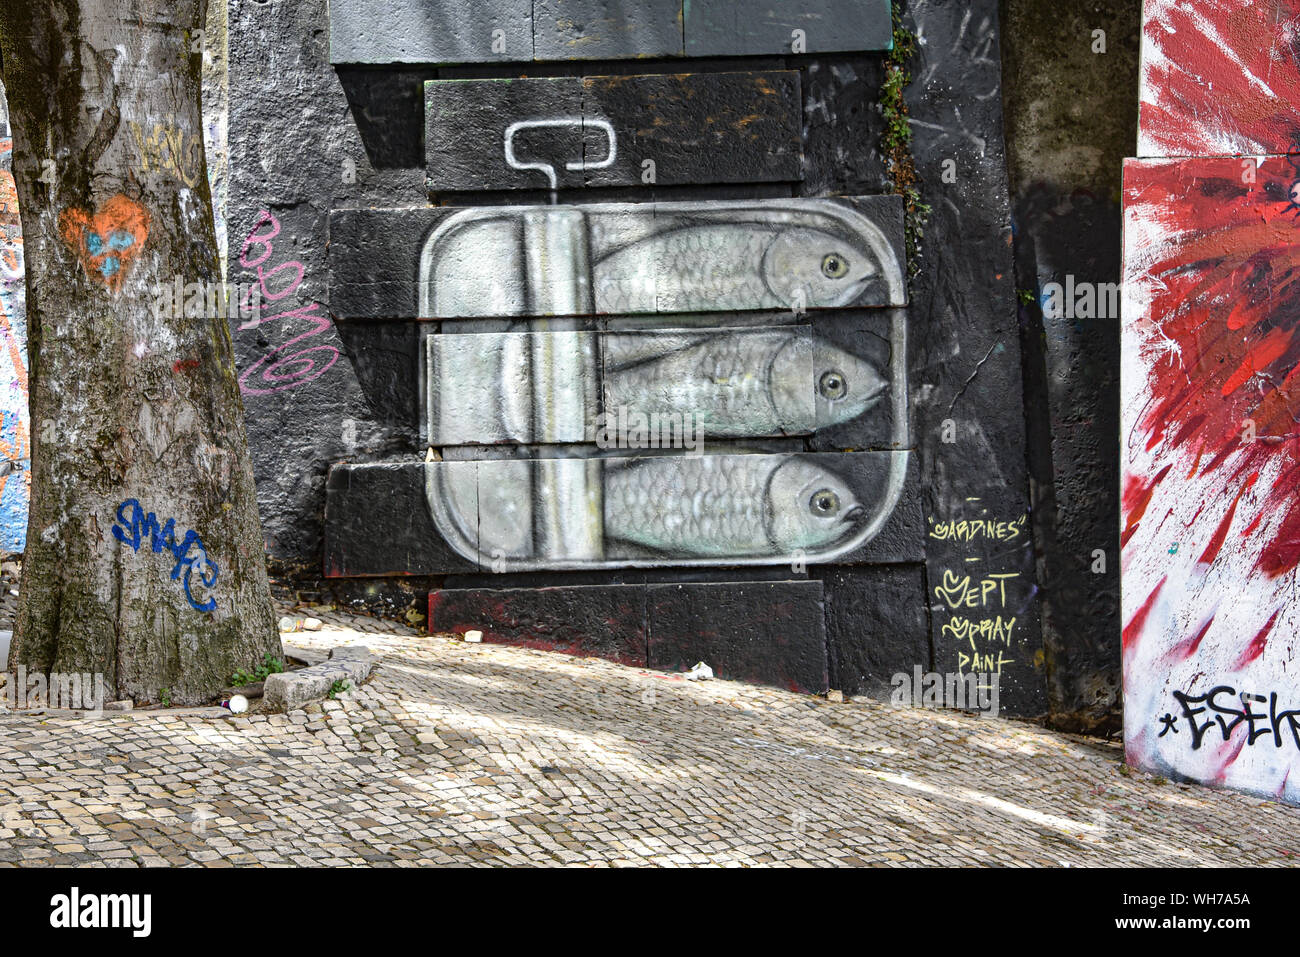 Lisbonne, Portugal - 27 juillet 2019 : Des exemples de l'art Graffiti colorés sur les rues de Lisbonne Banque D'Images